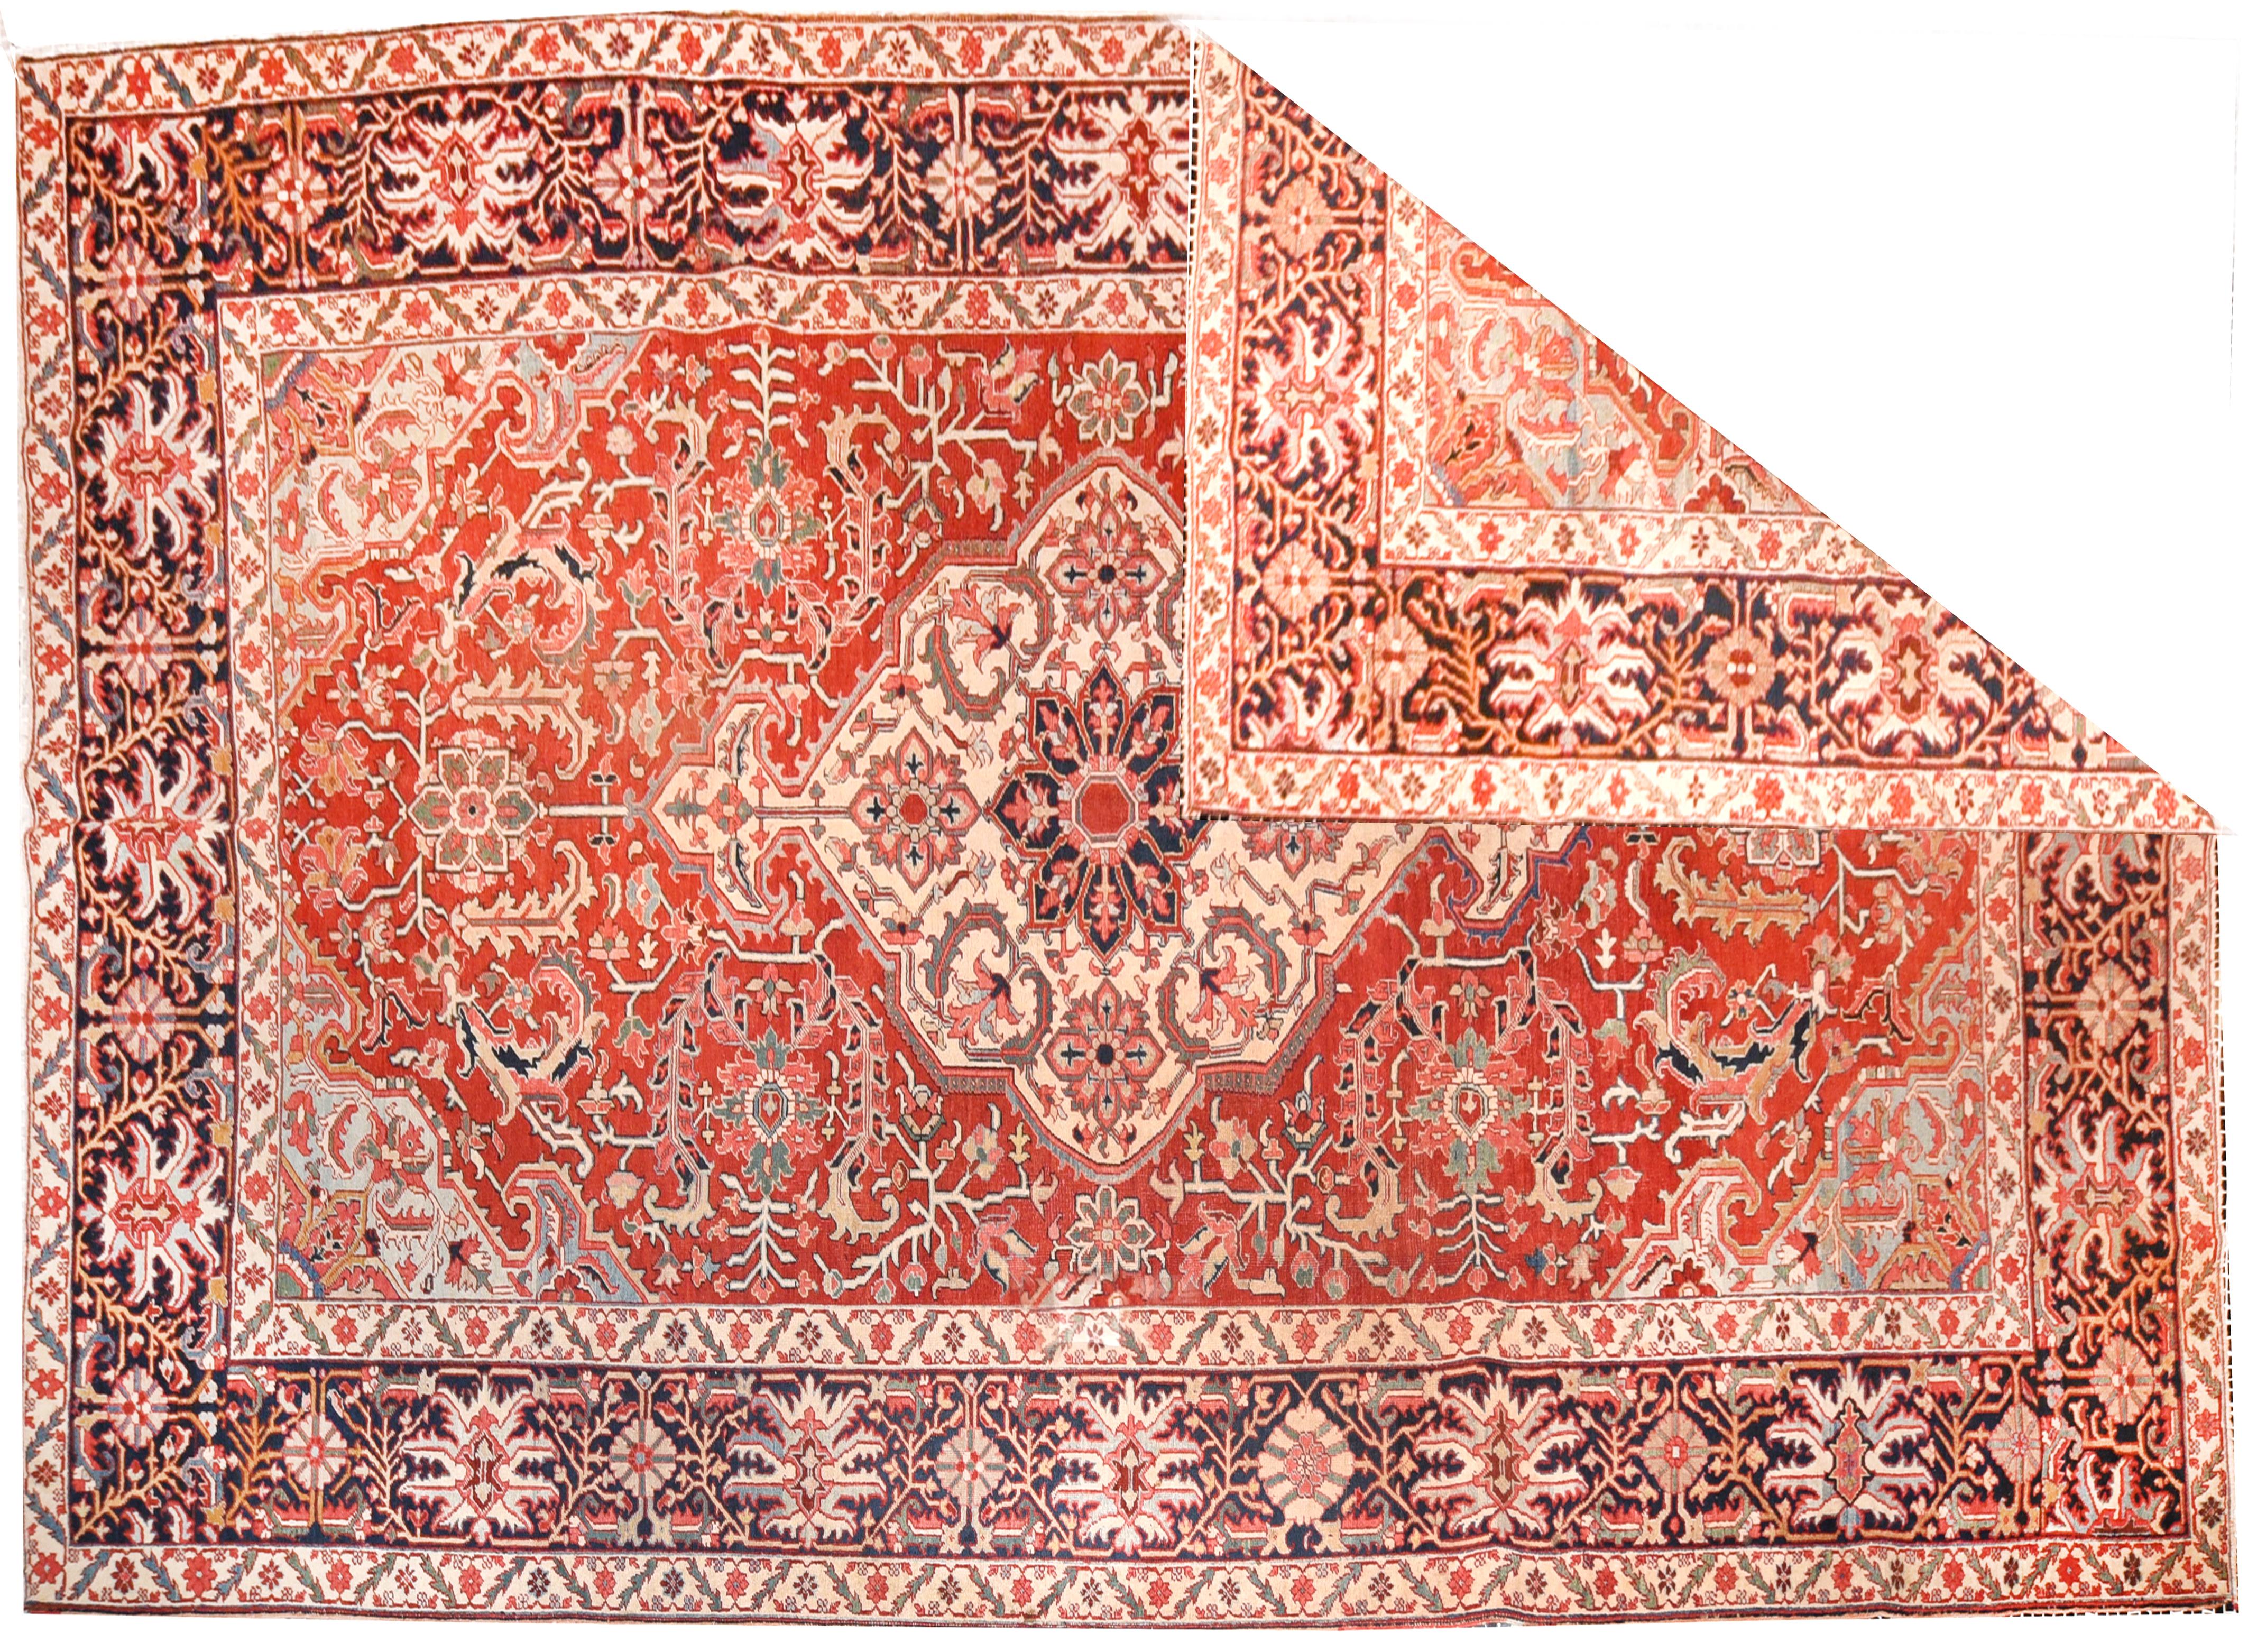 Die Heriz-Teppiche gehören zu den berühmtesten Teppichen aus dem Iran, da sie einen ganz eigenen und unverwechselbaren Stil haben. Heriz ist eine Stadt im Nordwesten des Irans, in der Nähe der Stadt Tabriz, die ein wichtiges Zentrum der